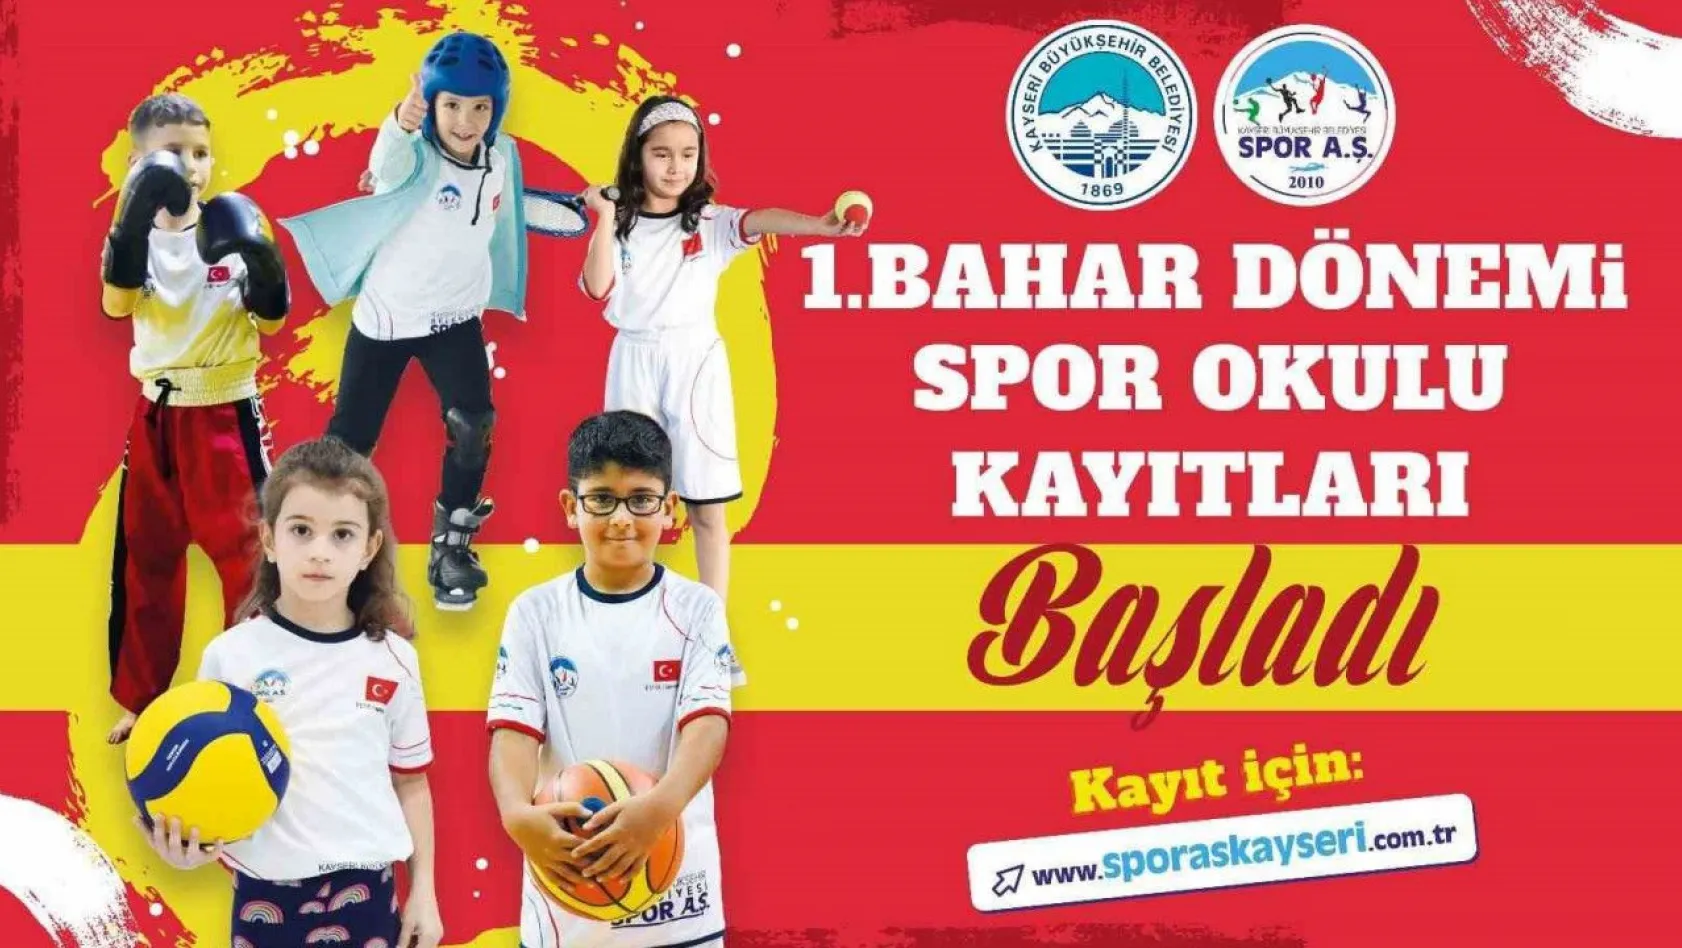 Spor A.Ş.'nin Bahar Dönemi Spor Okulları Kayıtları Başladı